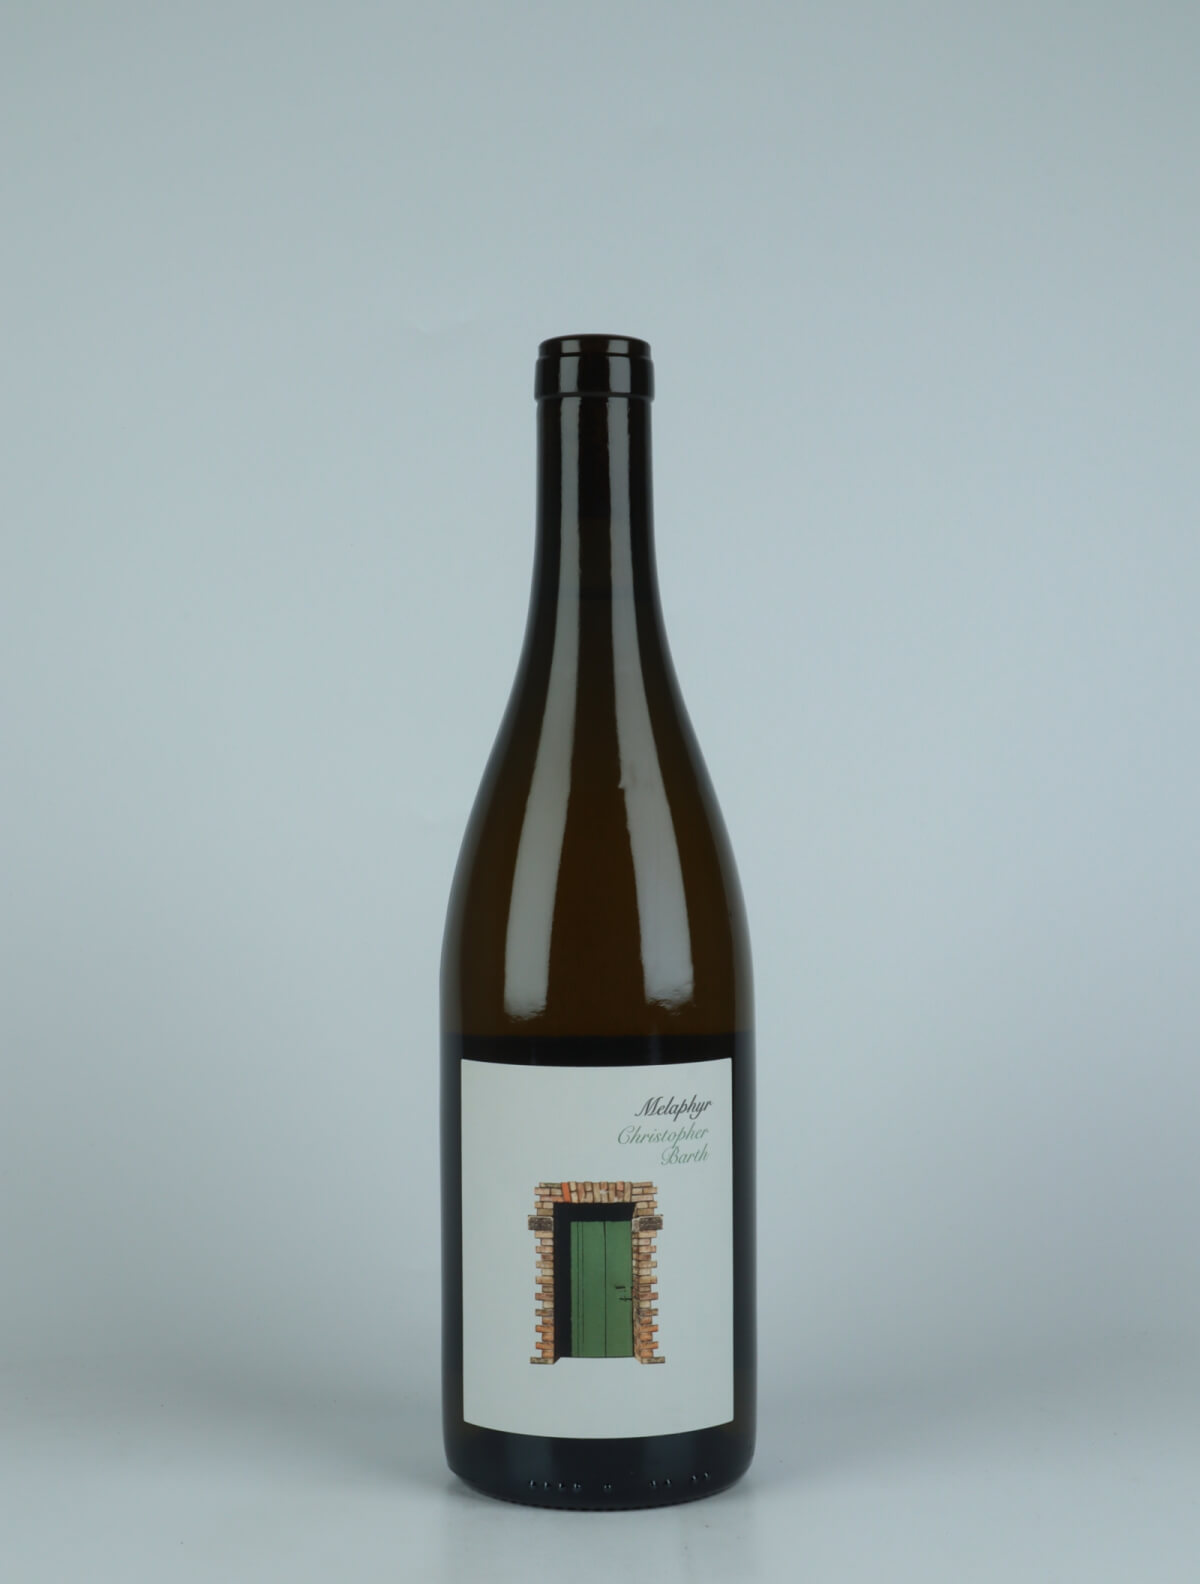 En flaske 2021 Melaphyr Riesling Hvidvin fra Christopher Barth, Rheinhessen i Tyskland